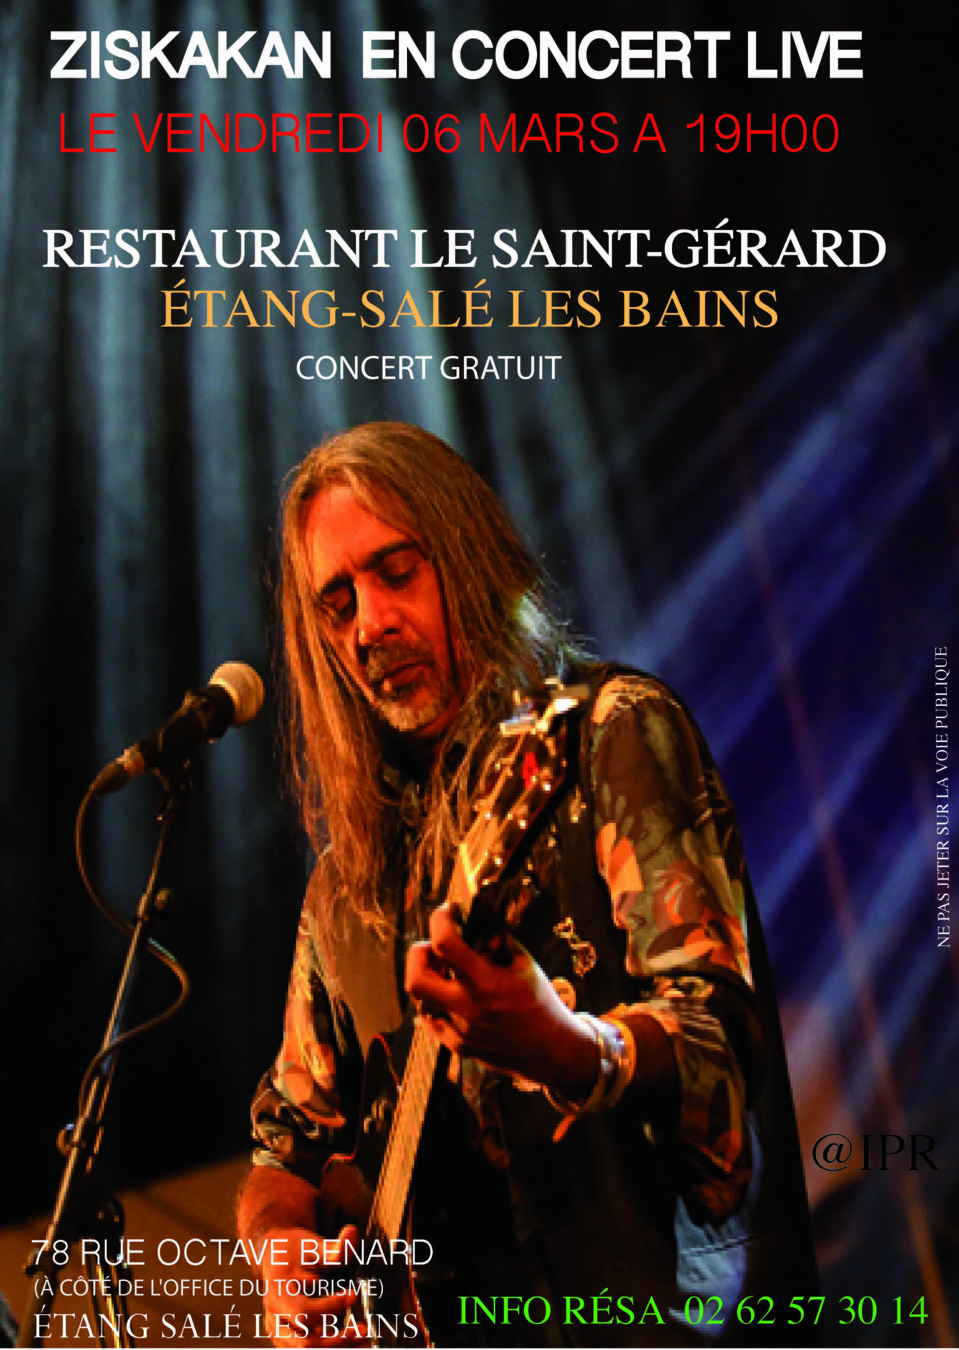 Concert gratuit de Ziskakan le vendredi 6 mars au restaurant Le Saint-Gérard à l'Étang-Salé les Bains